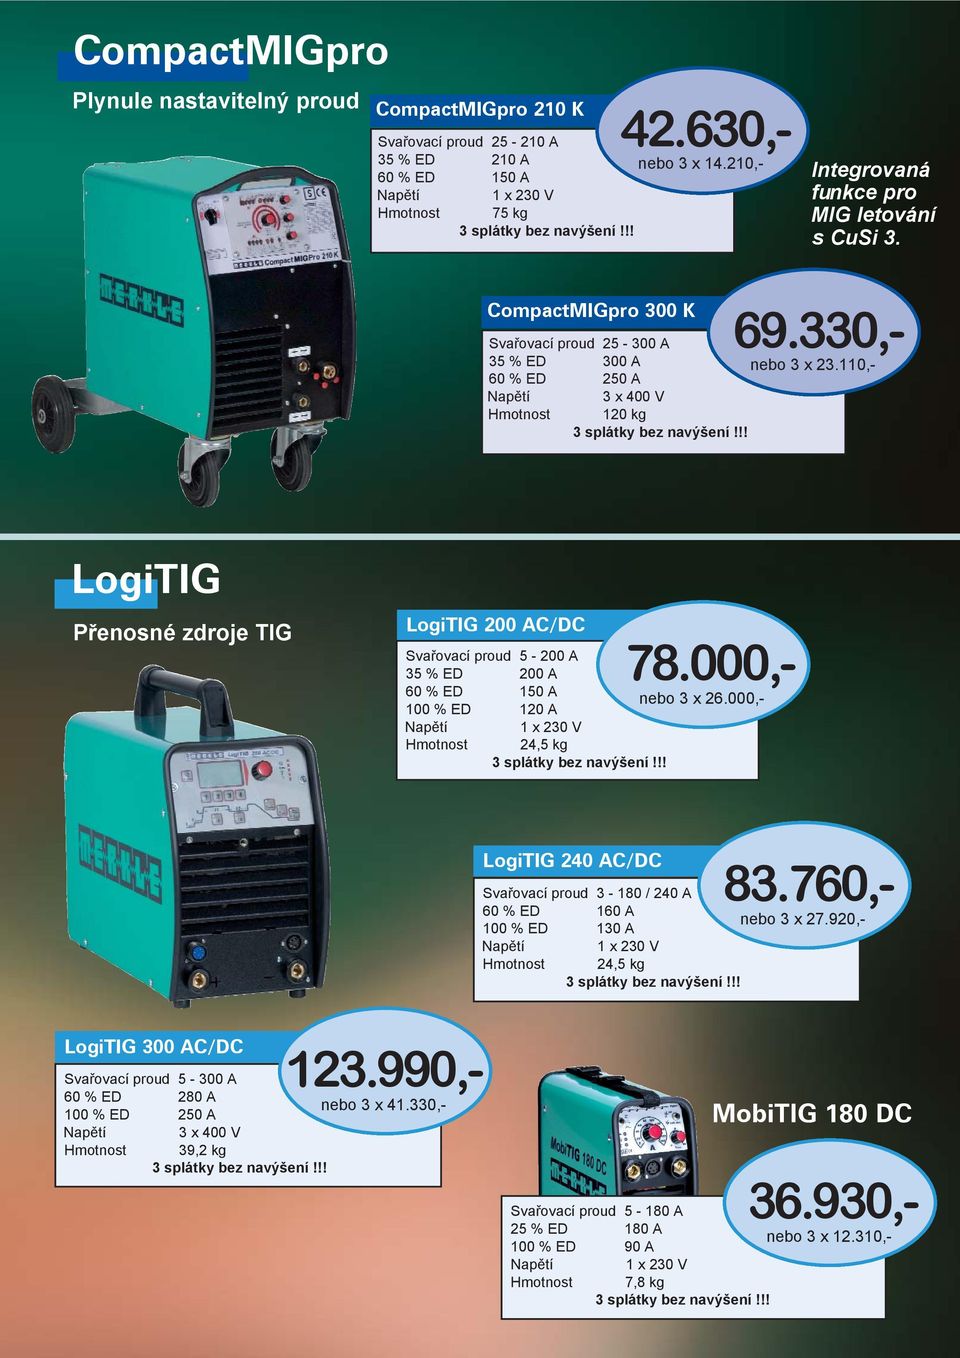 110,- LogiTIG Přenosné zdroje TIG LogiTIG 200 AC/DC Svařovací proud 5-200 A 35 % ED 200 A 60 % ED 150 A 100 % ED 120 A 24,5 kg 36.930,- nebo 3 x 12.310,- 78.000,- nebo 3 x 26.